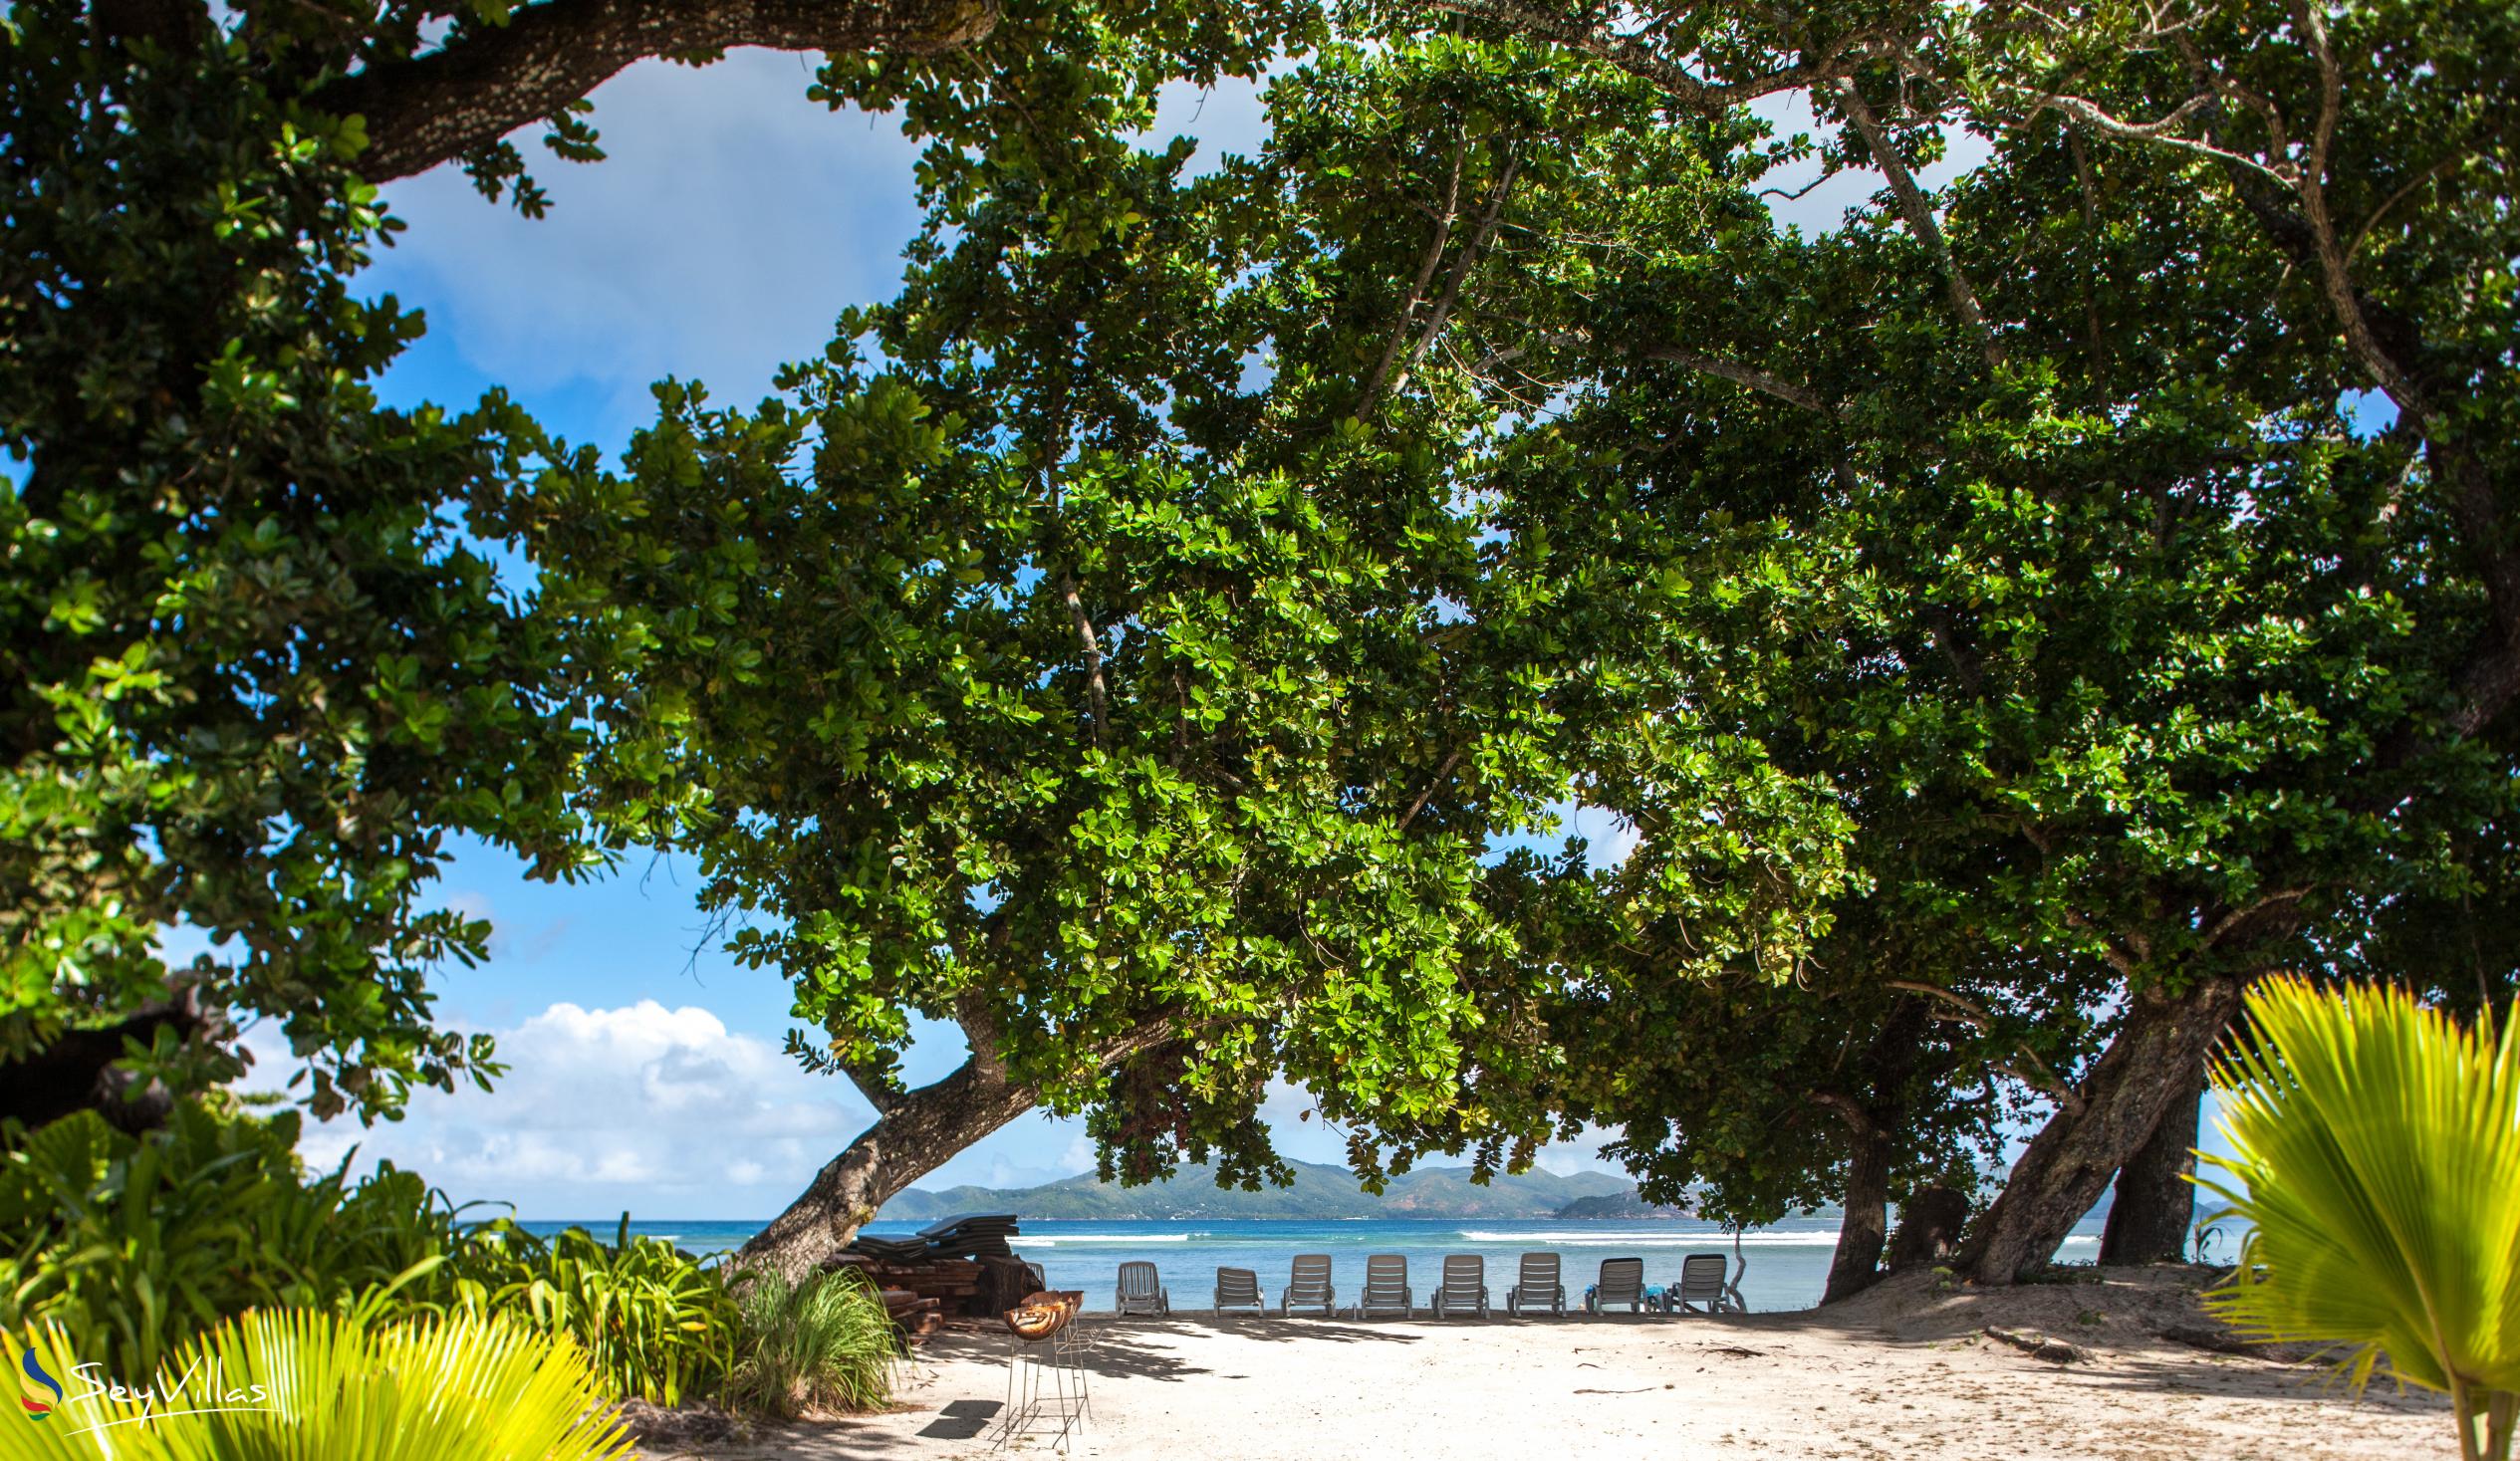 Foto 44: Villa Creole - Posizione - La Digue (Seychelles)